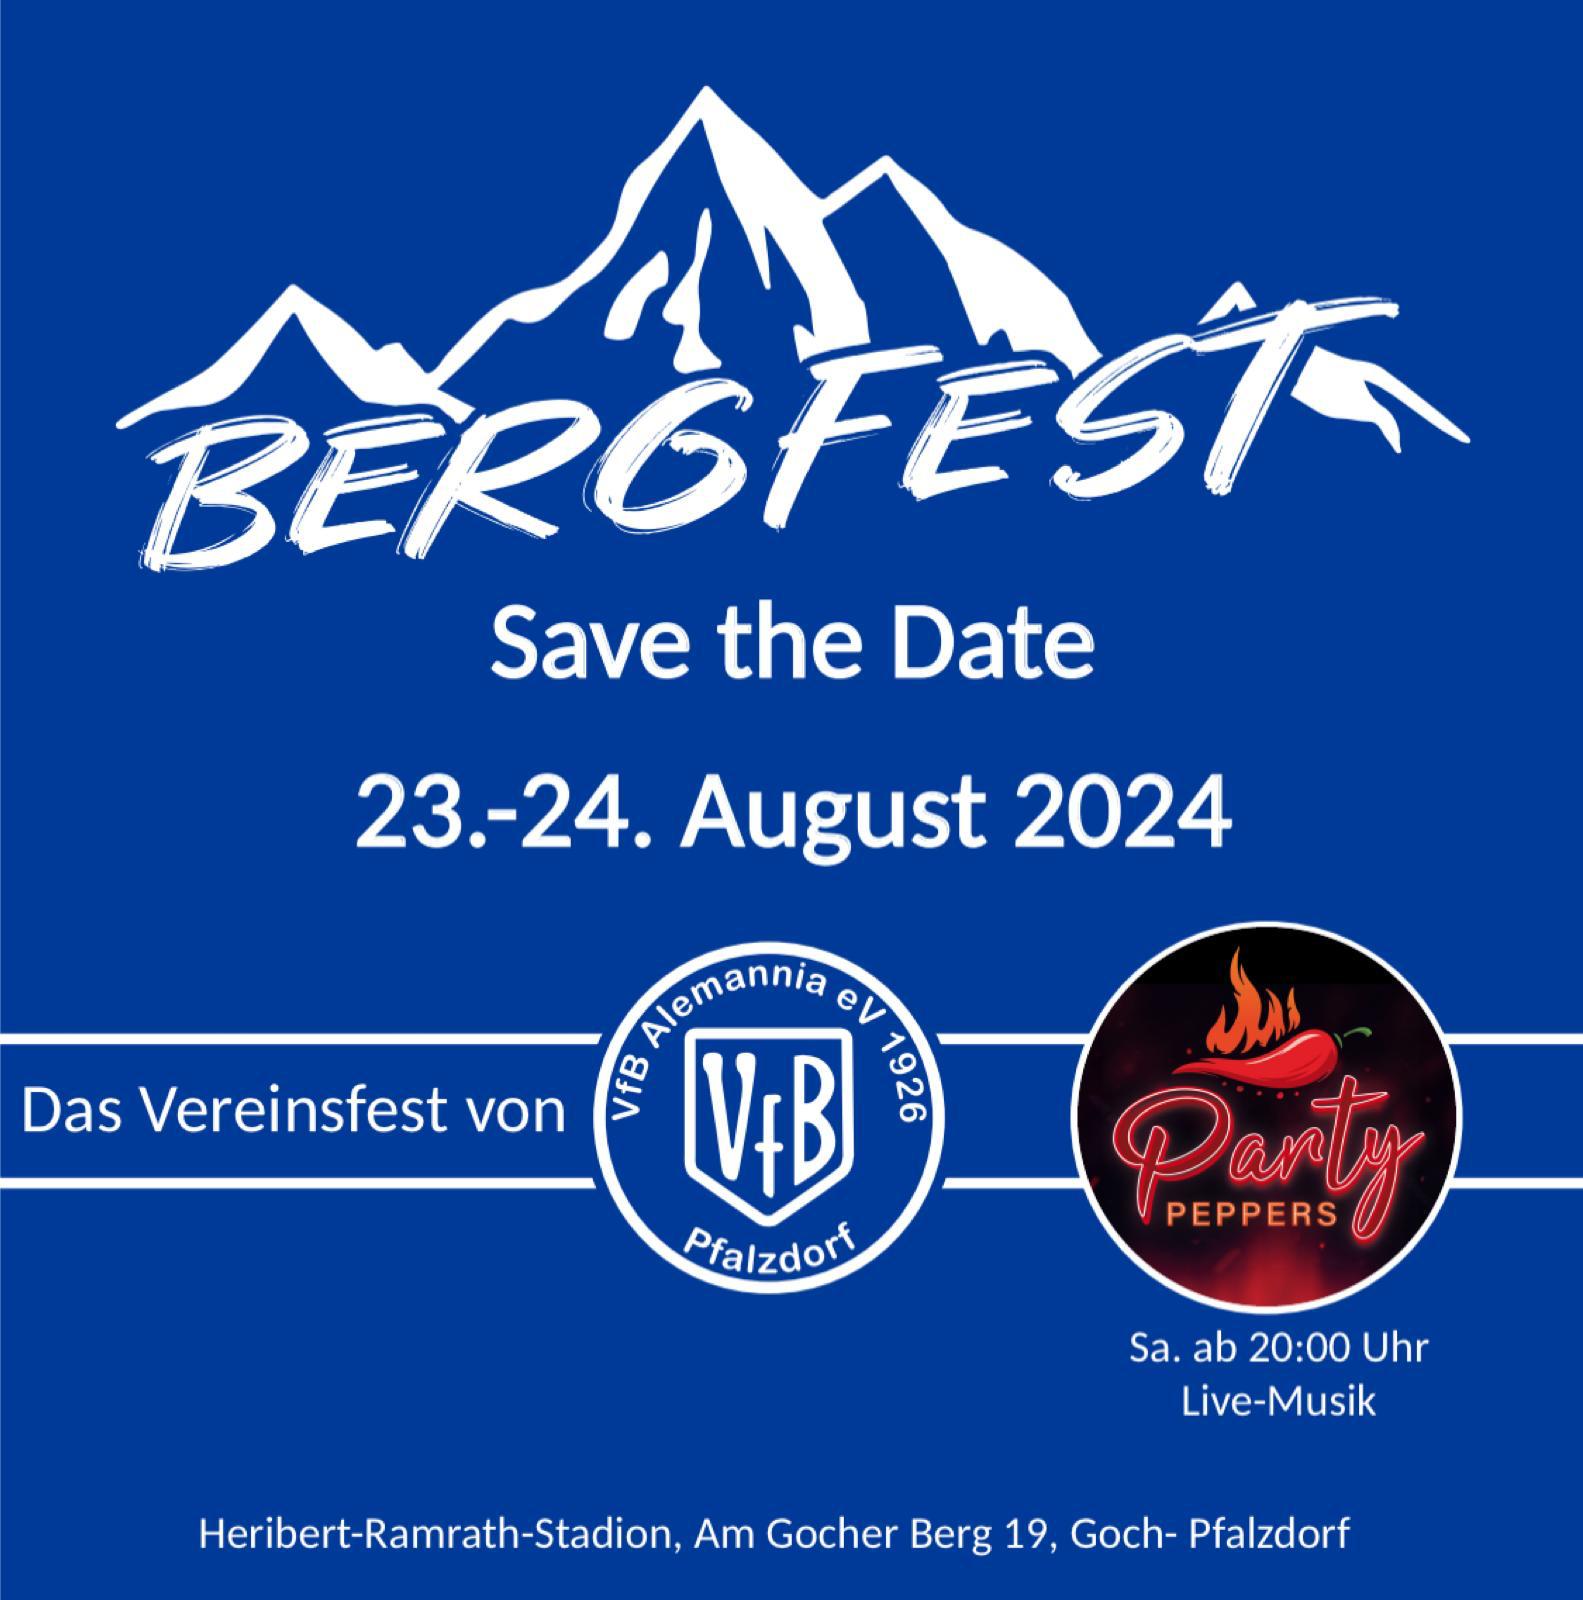 Bergfest 2024